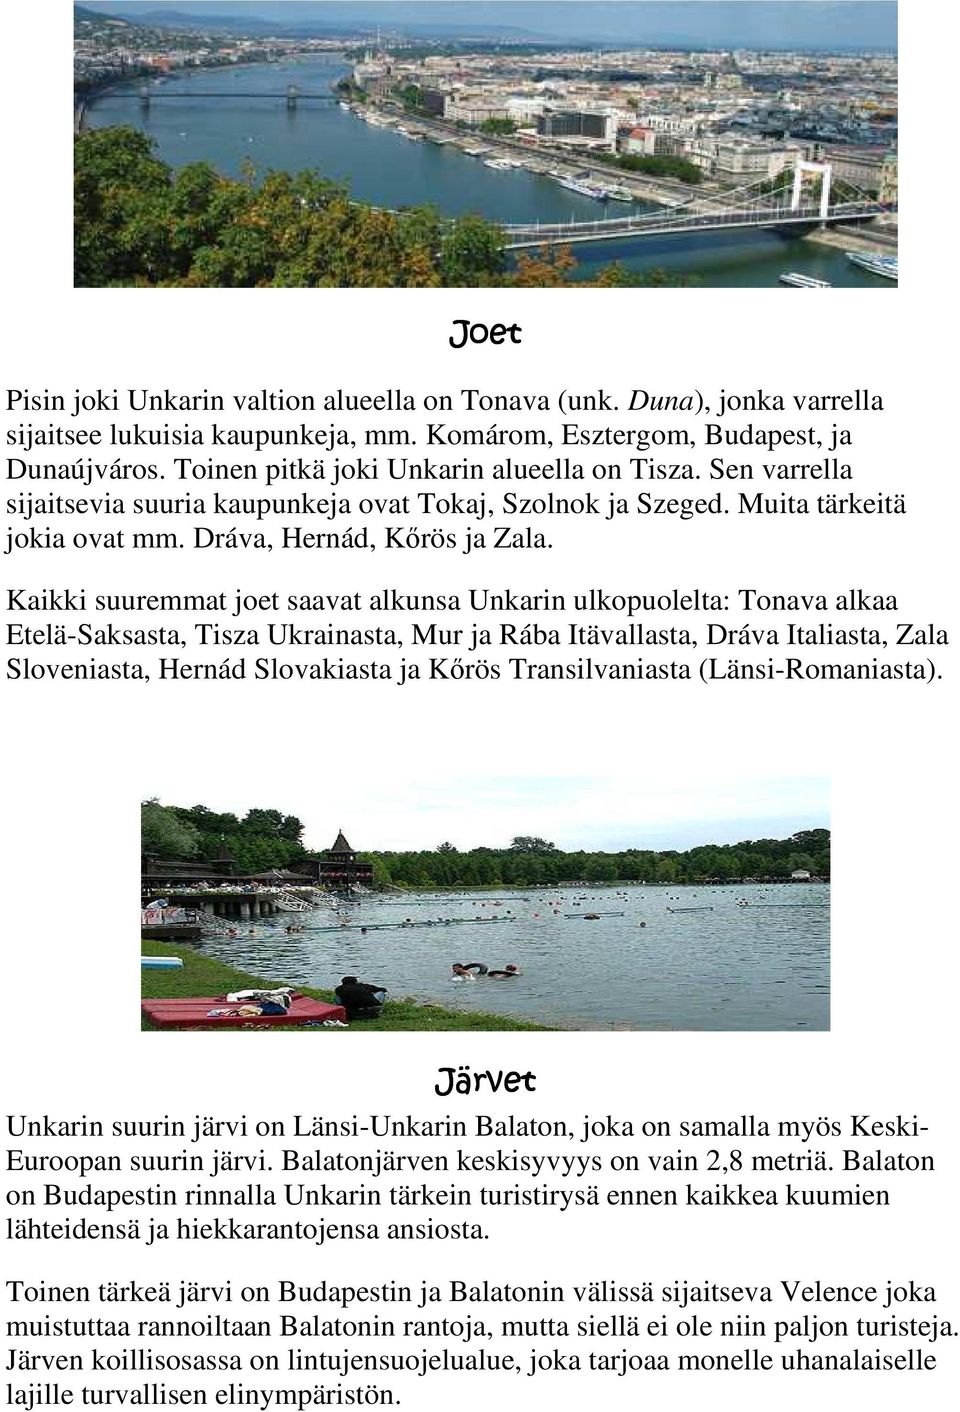 Kaikki suuremmat joet saavat alkunsa Unkarin ulkopuolelta: Tonava alkaa Etelä-Saksasta, Tisza Ukrainasta, Mur ja Rába Itävallasta, Dráva Italiasta, Zala Sloveniasta, Hernád Slovakiasta ja Kırös